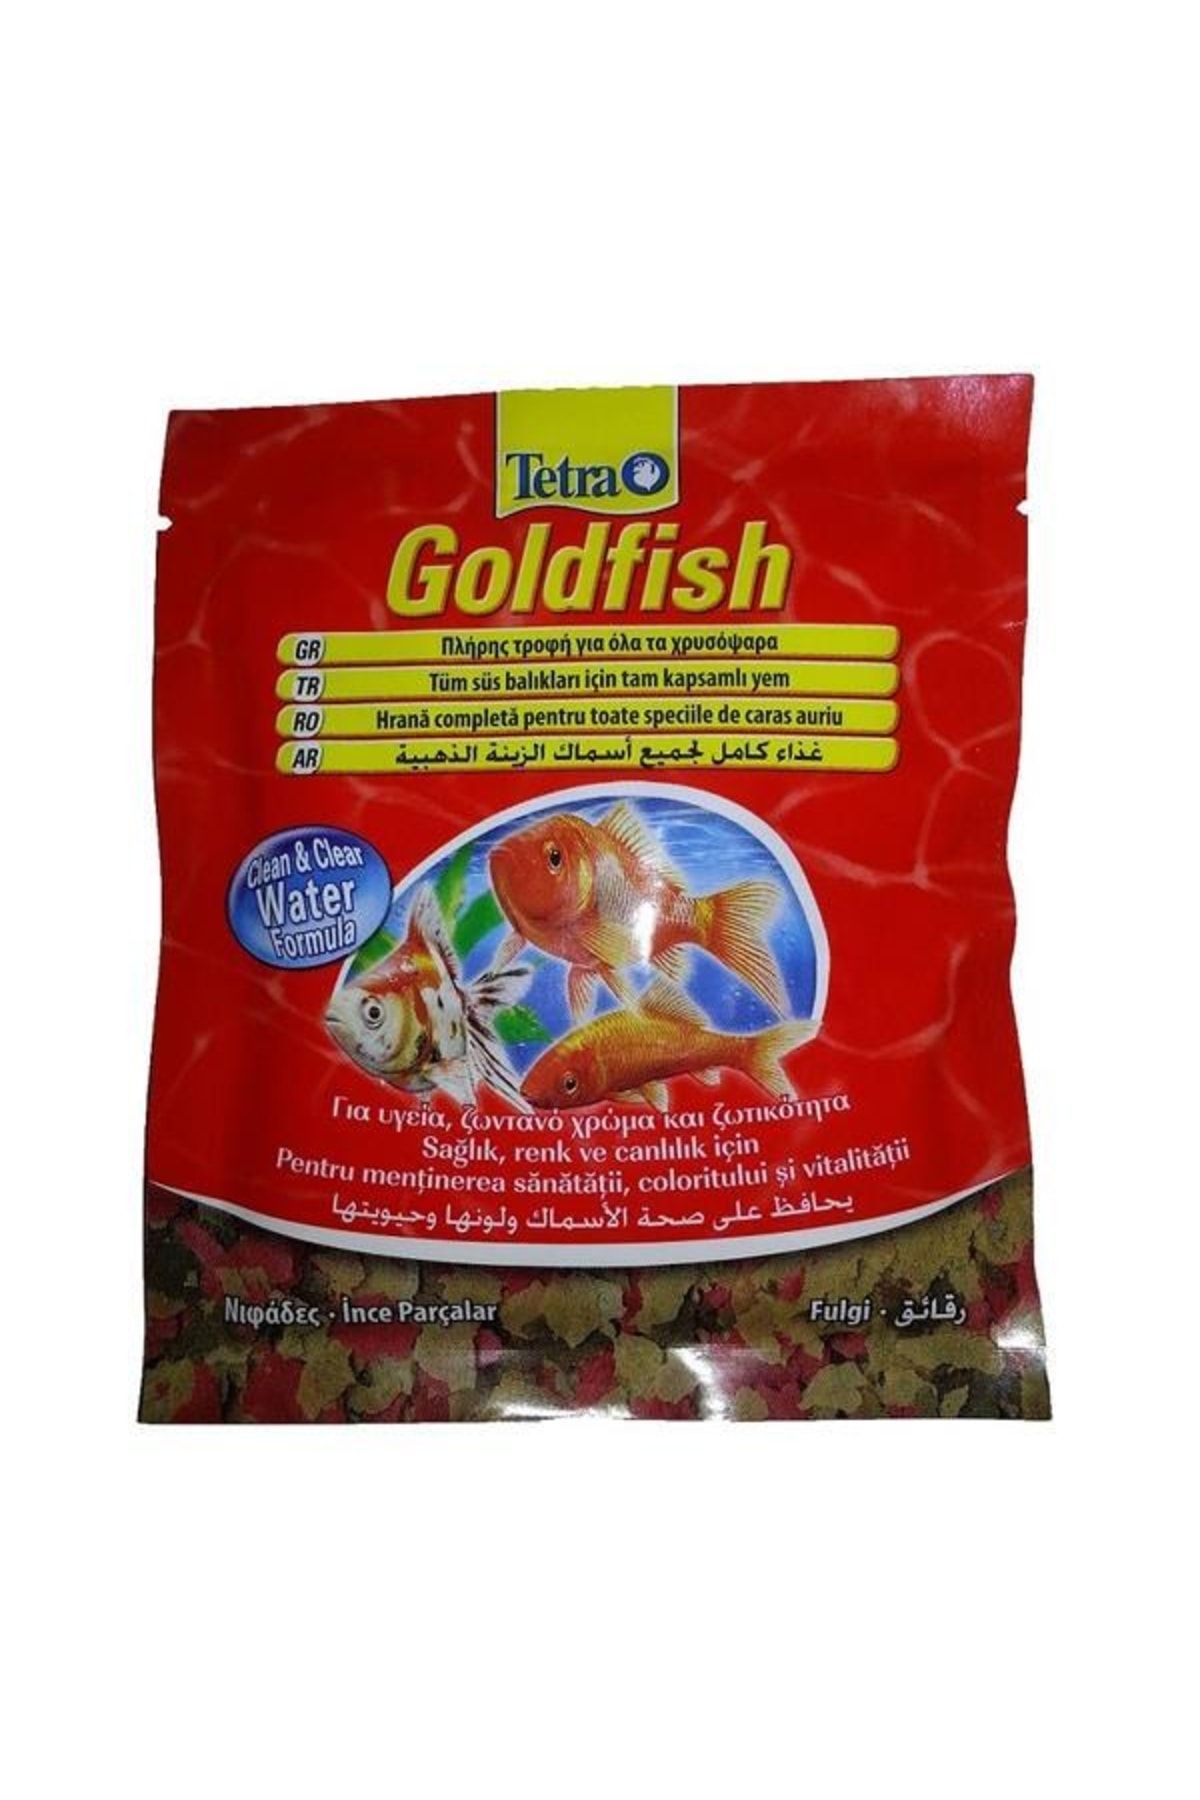 Tetra Goldfish Japon Baliği Yemi 100 ml Fiyatı, Yorumları - Trendyol